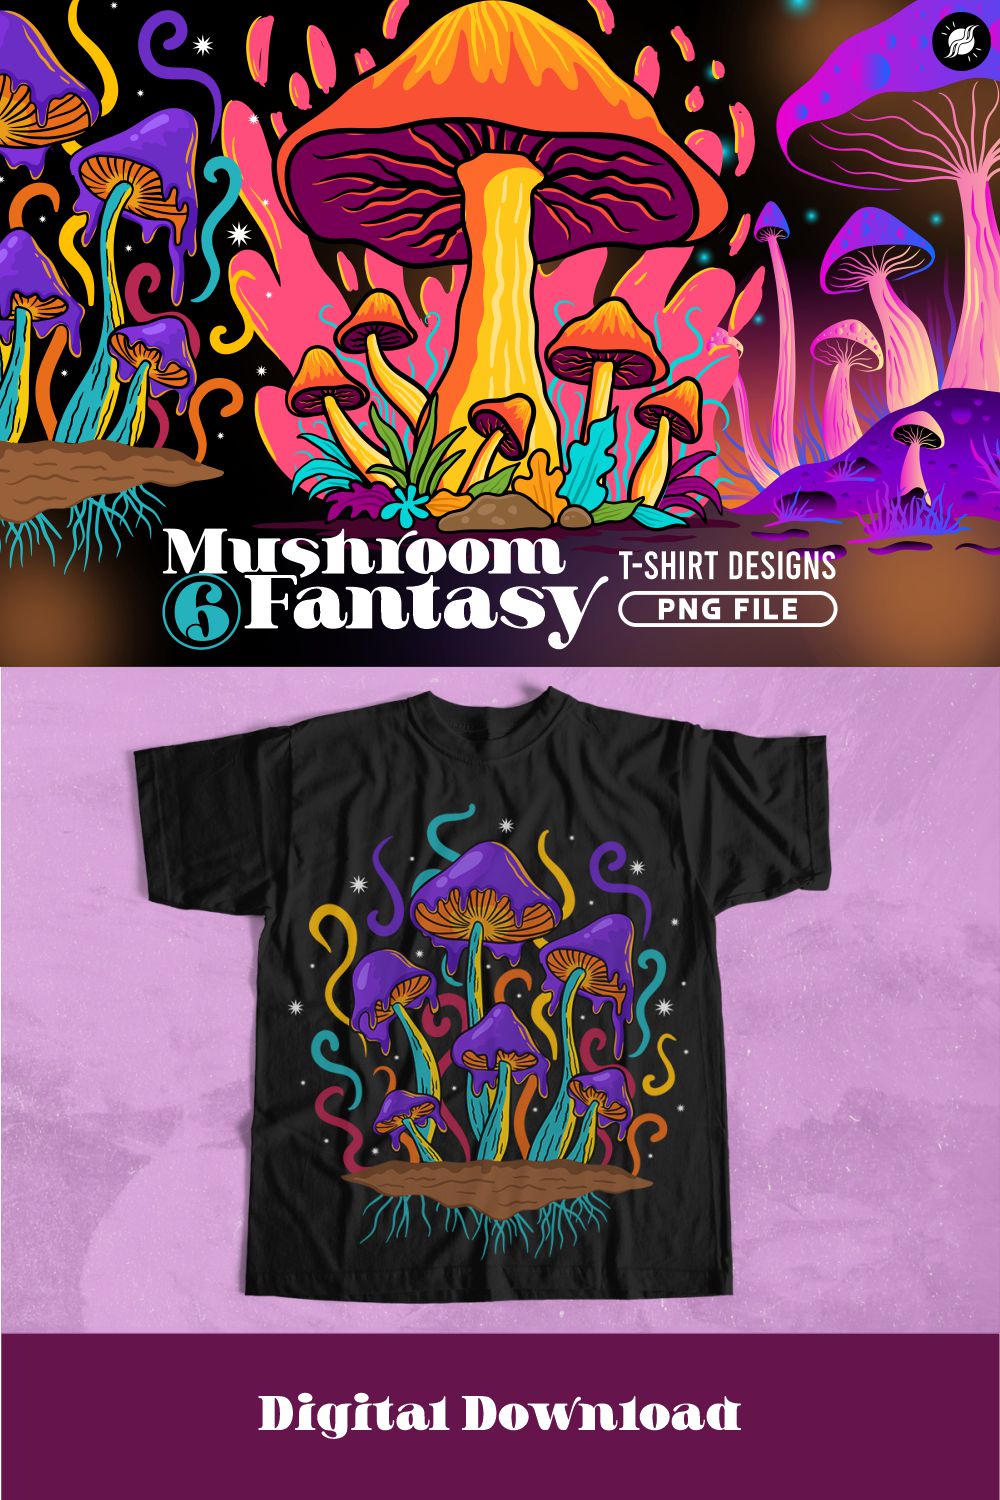 Mushroom Fantasy Art Illustration PNG T-shirt Designs Bundle pinterest preview image.